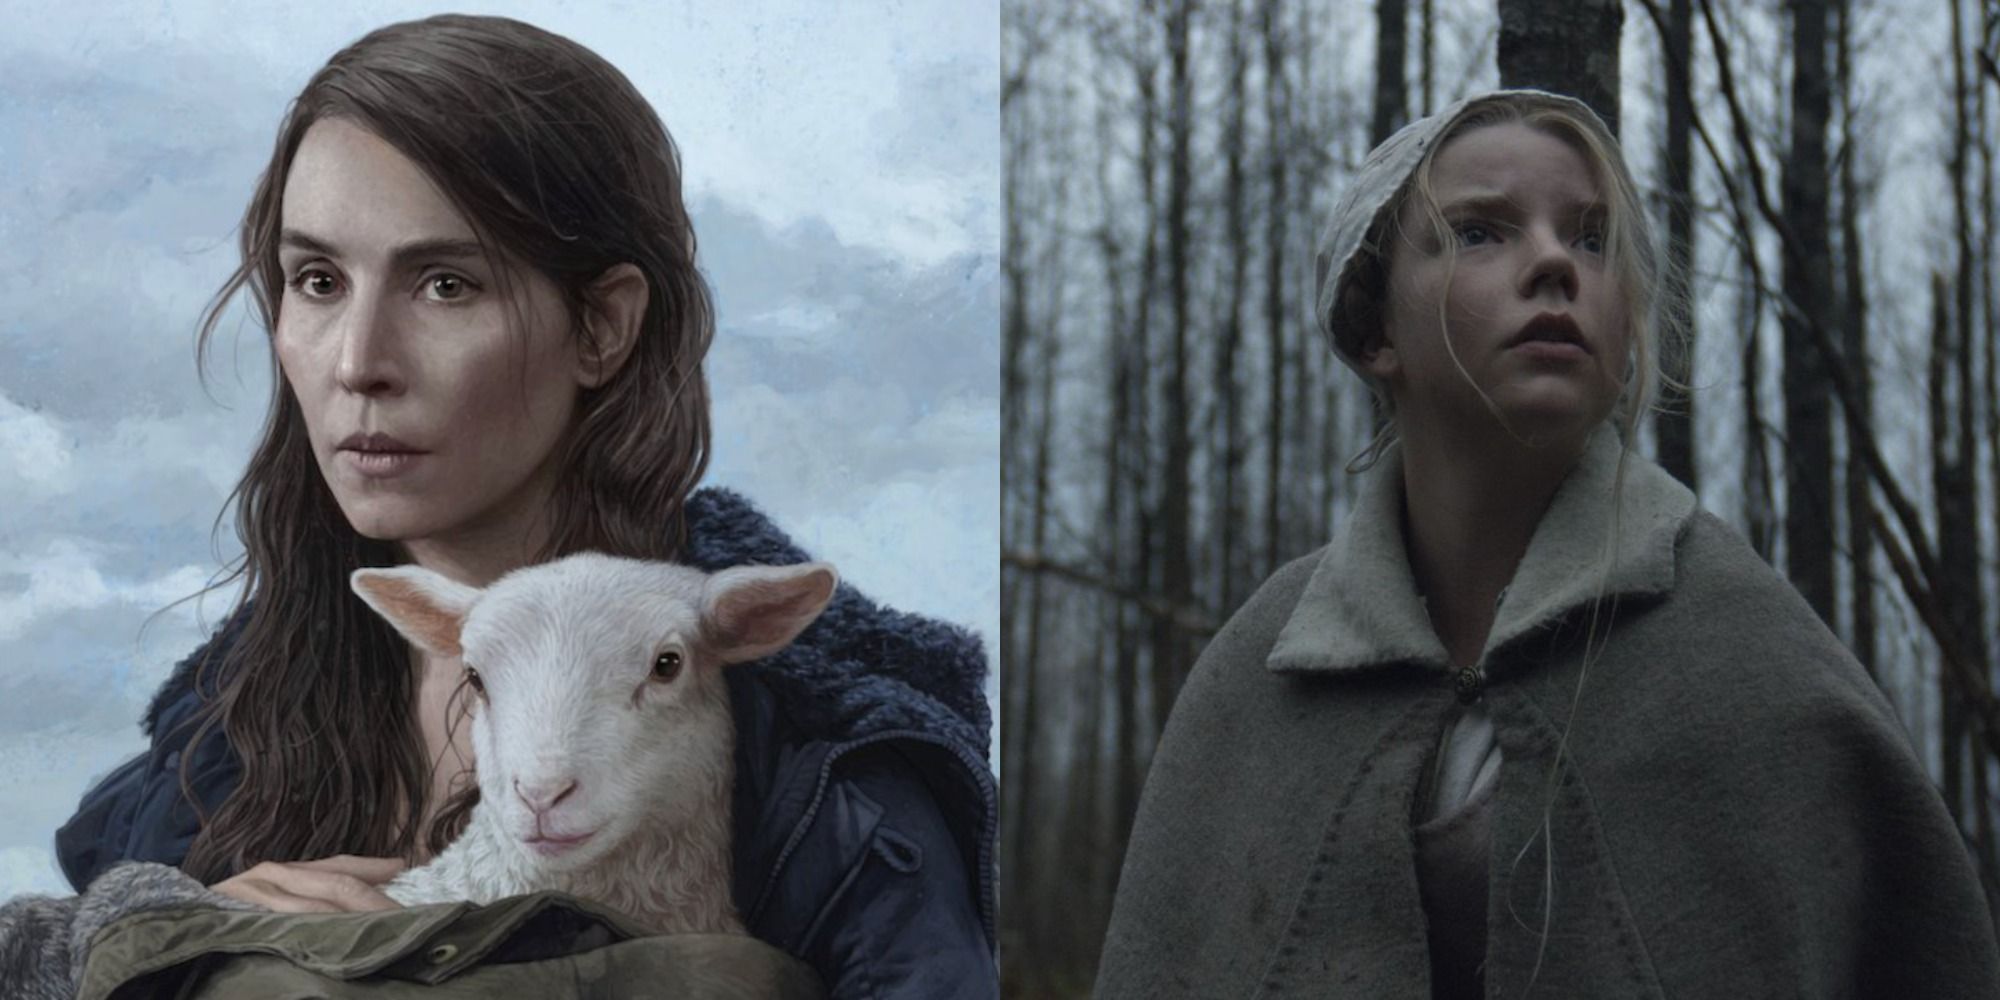 Movie lamb Lamb synopsis: